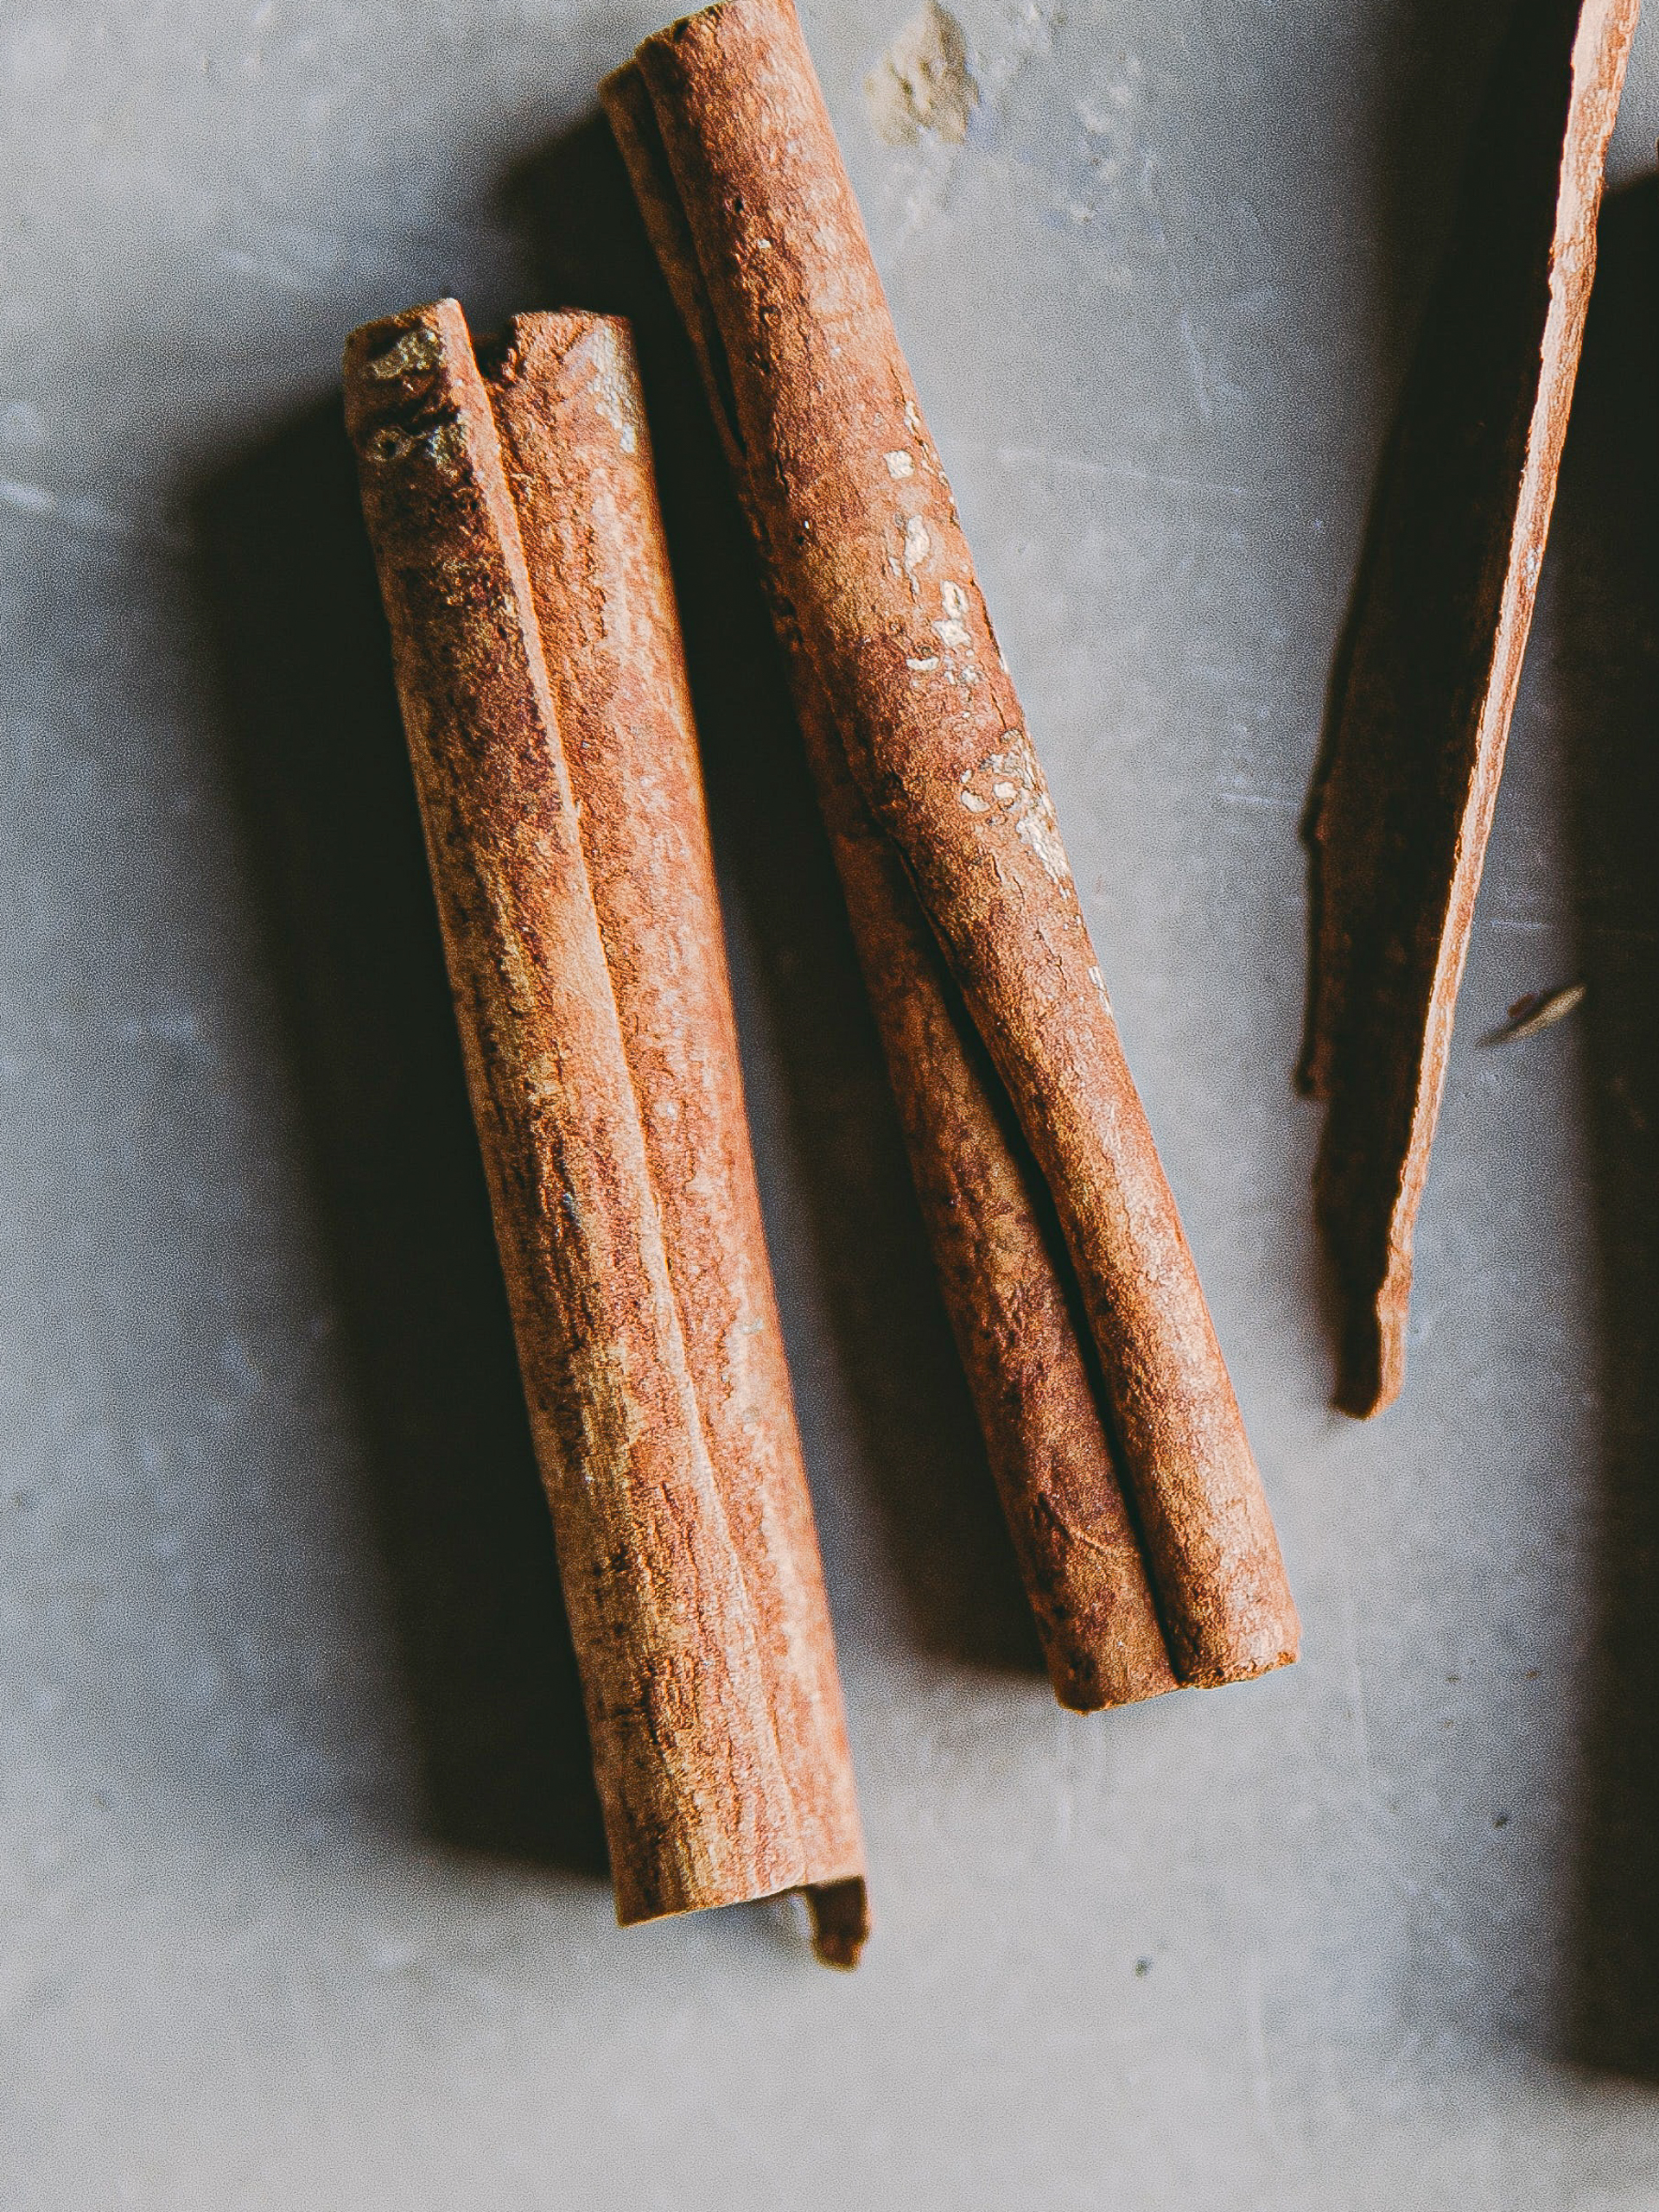 3 Ways Cinnamon Helps Lower Blood Sugar